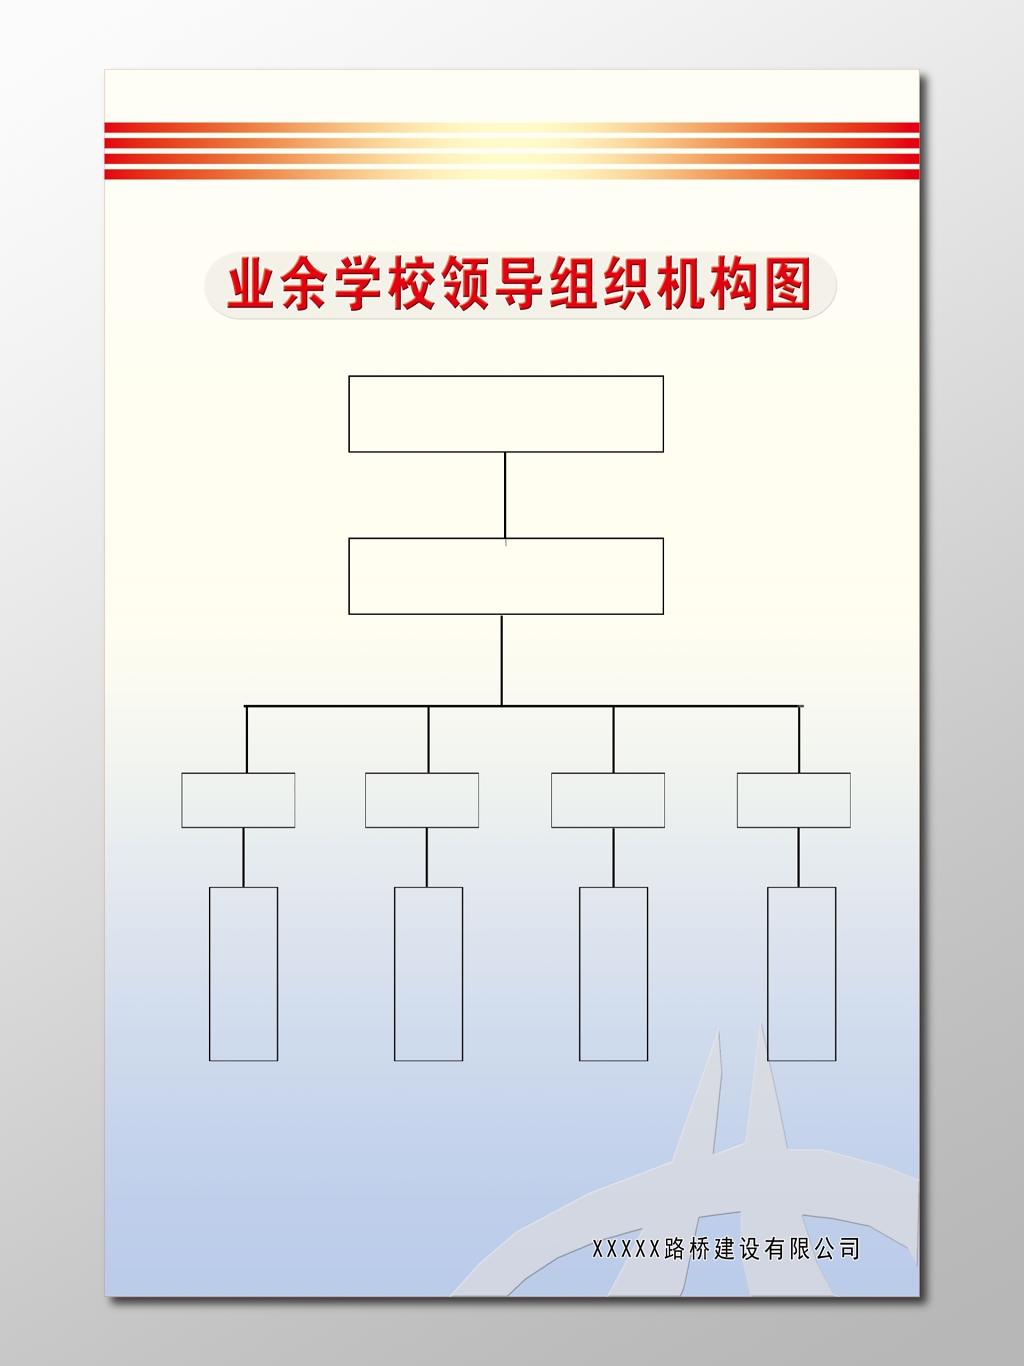 组织架构图树状图逻辑图领导组织结构图